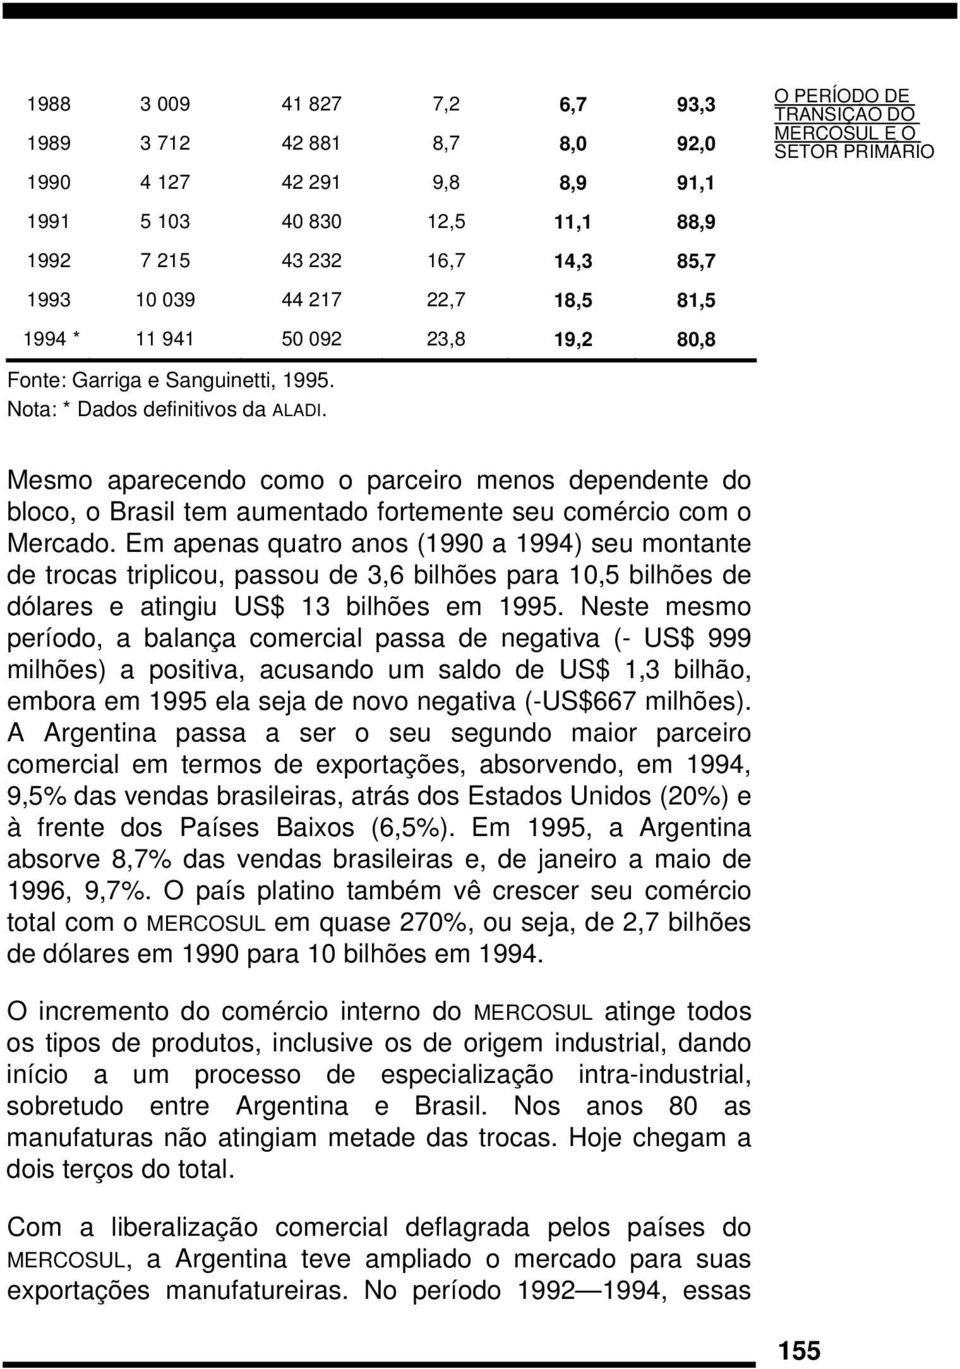 Mesmo aparecendo como o parceiro menos dependente do bloco, o Brasil tem aumentado fortemente seu comércio com o Mercado.